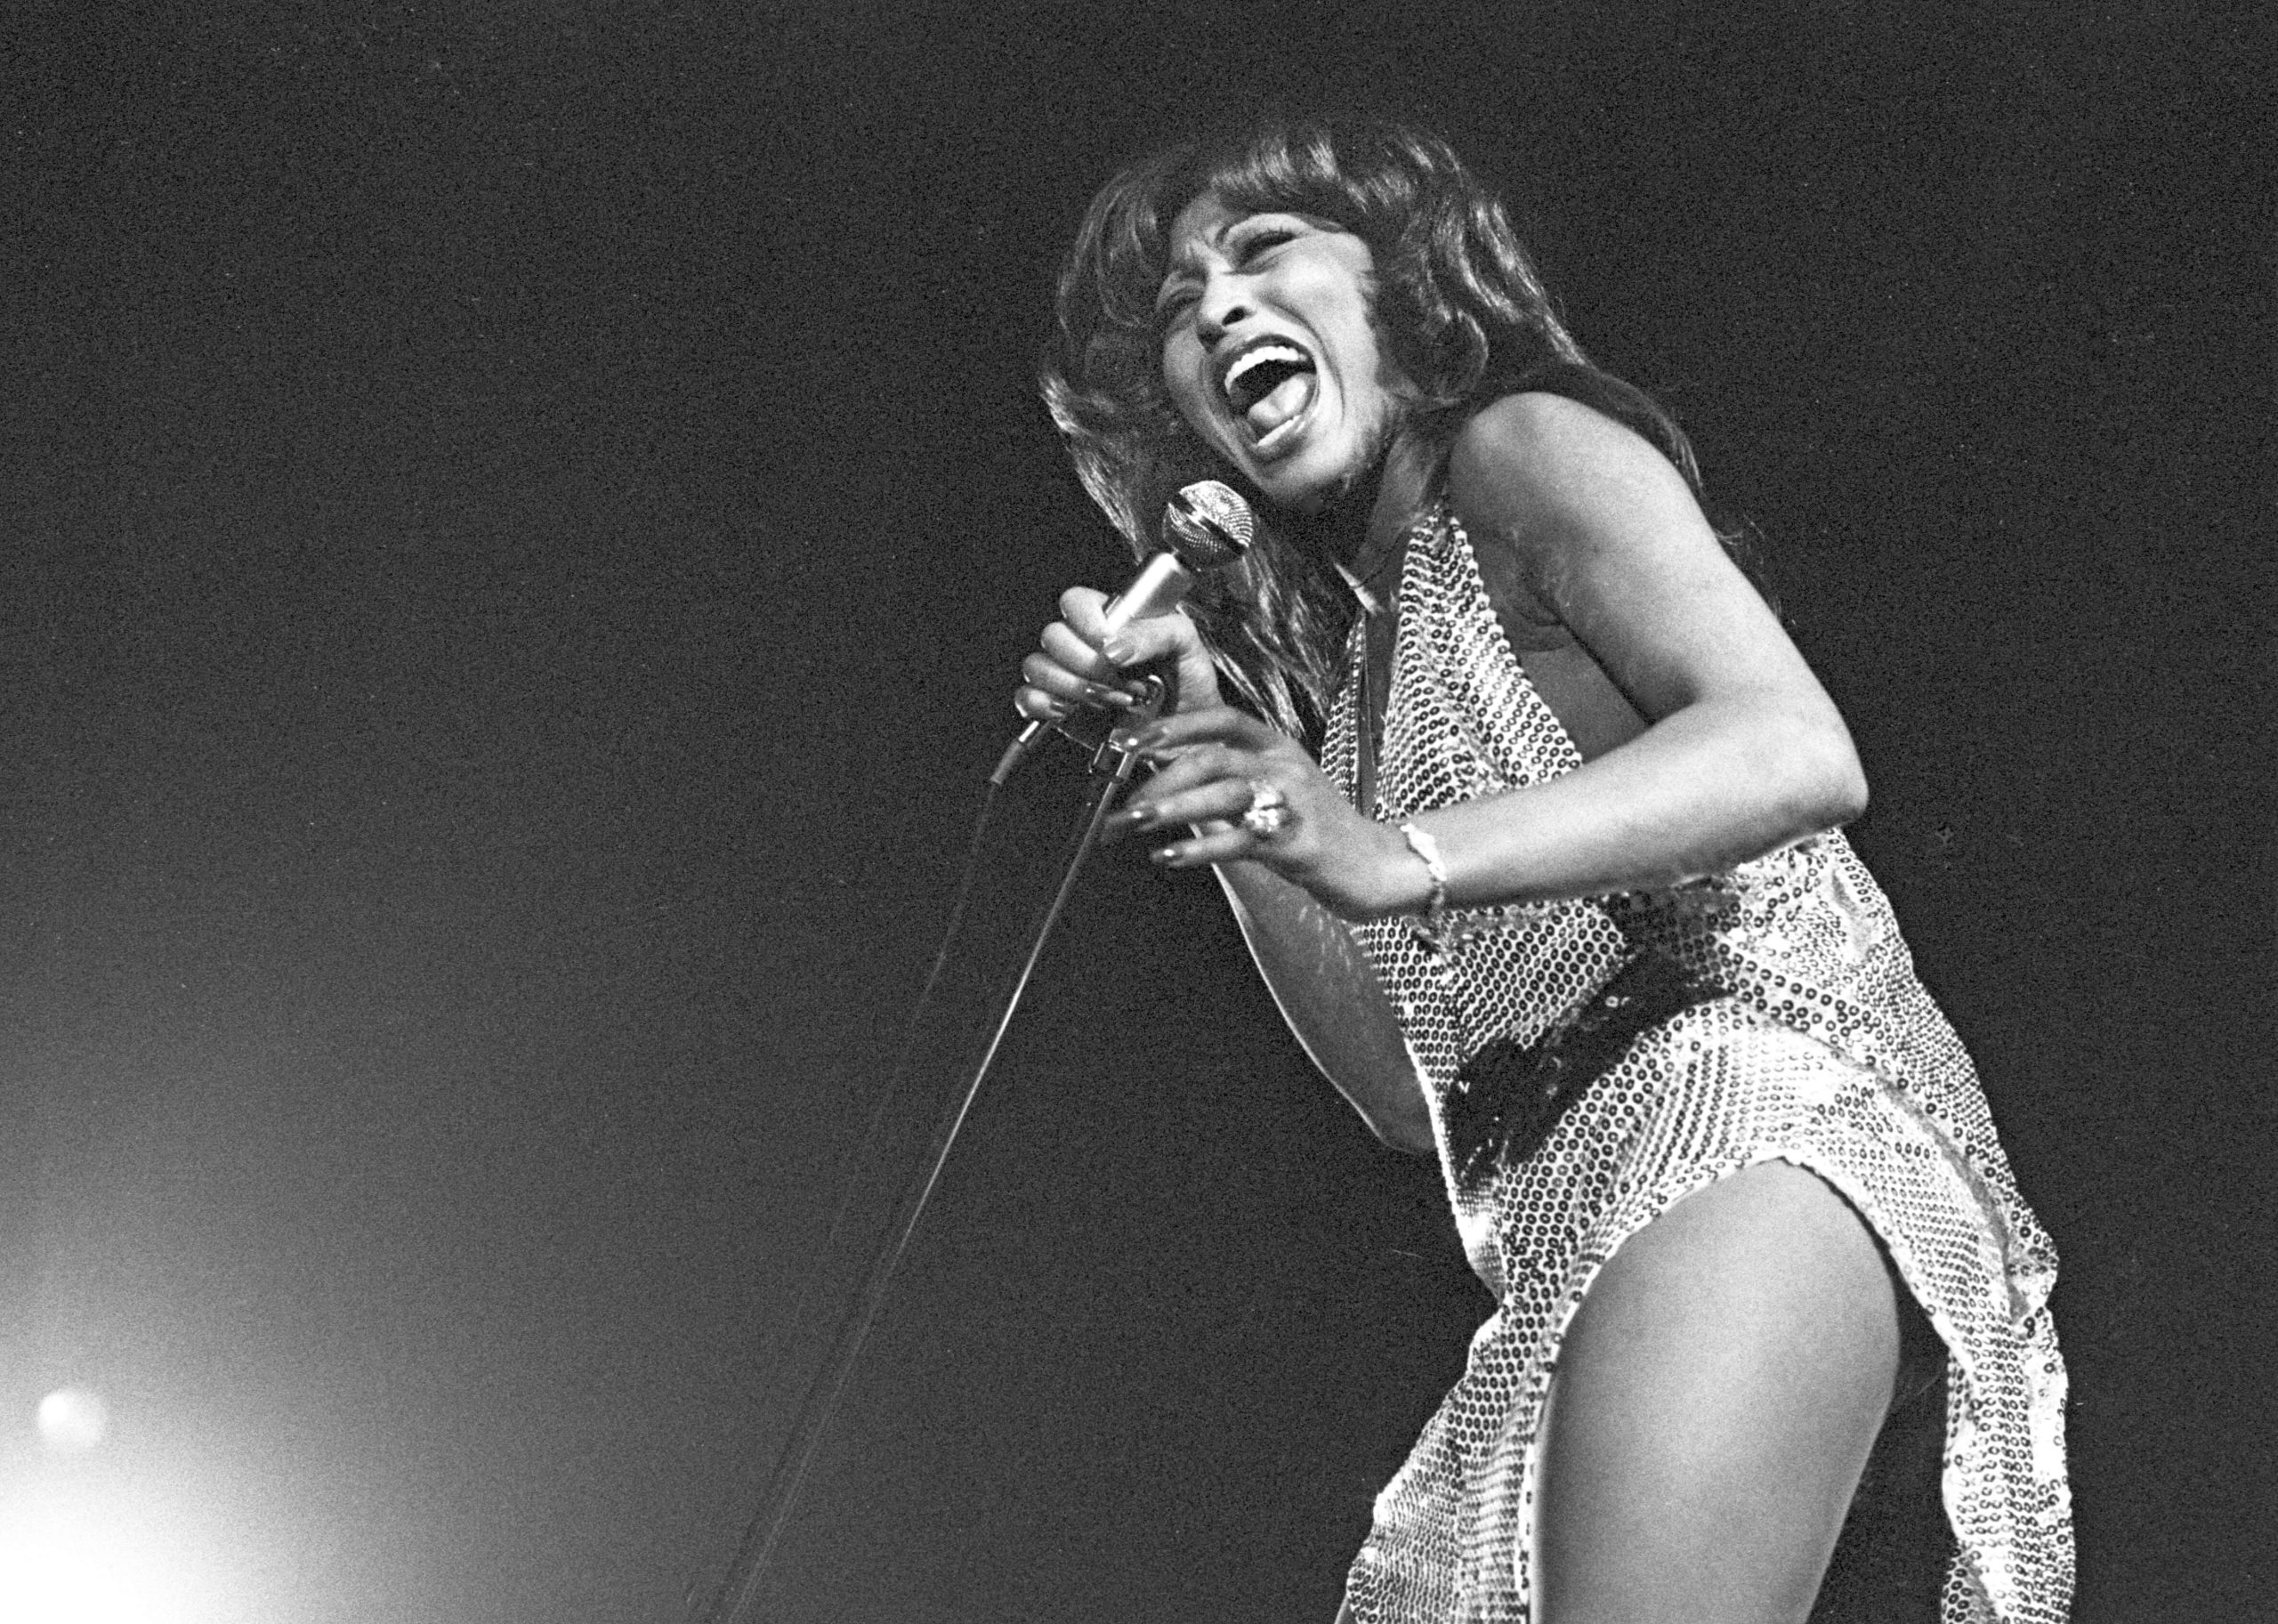 Kultowa piosenkarka rockowa i soulowa Tina Turner zmarła w wieku 83 lat